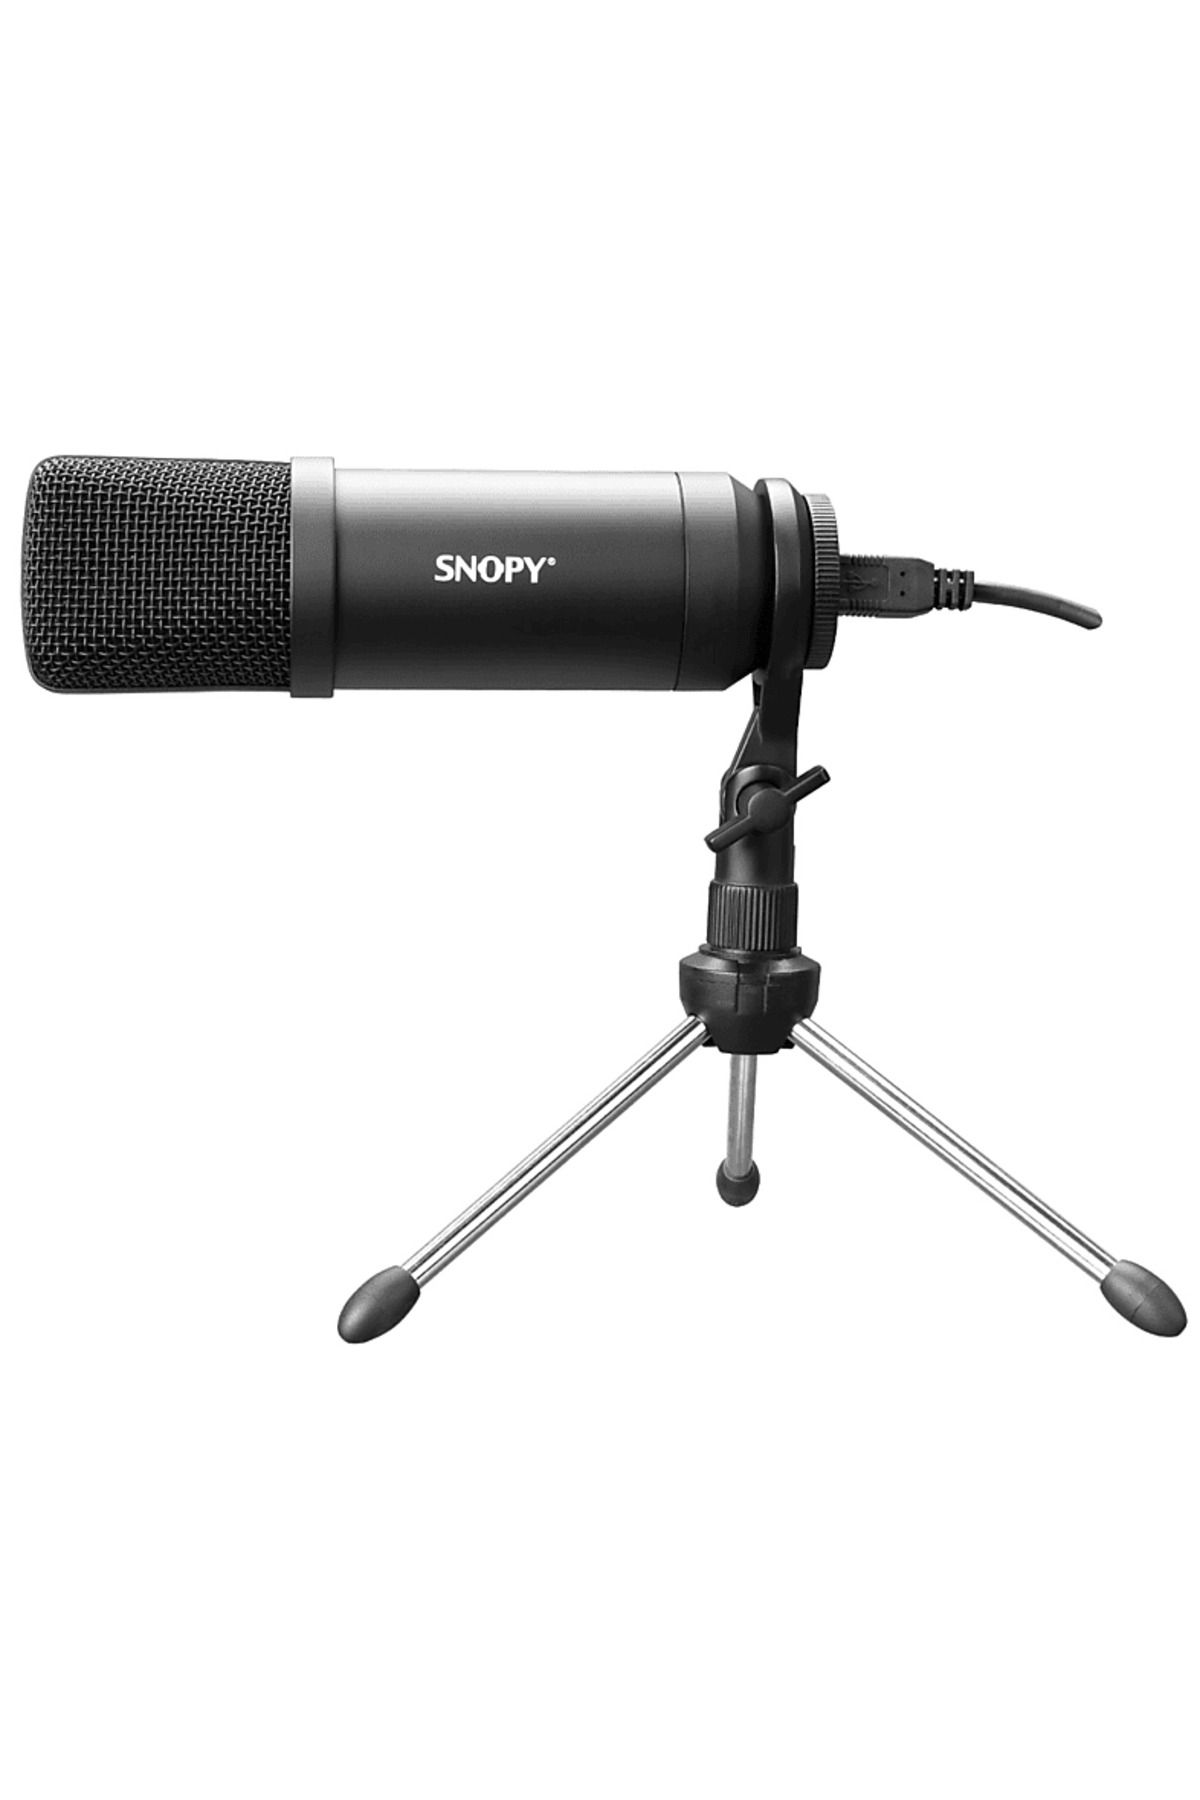 Snopy SN-04P Çok Amaçli Profesyonel Masaüstü Mikrofon Kiti Siyah